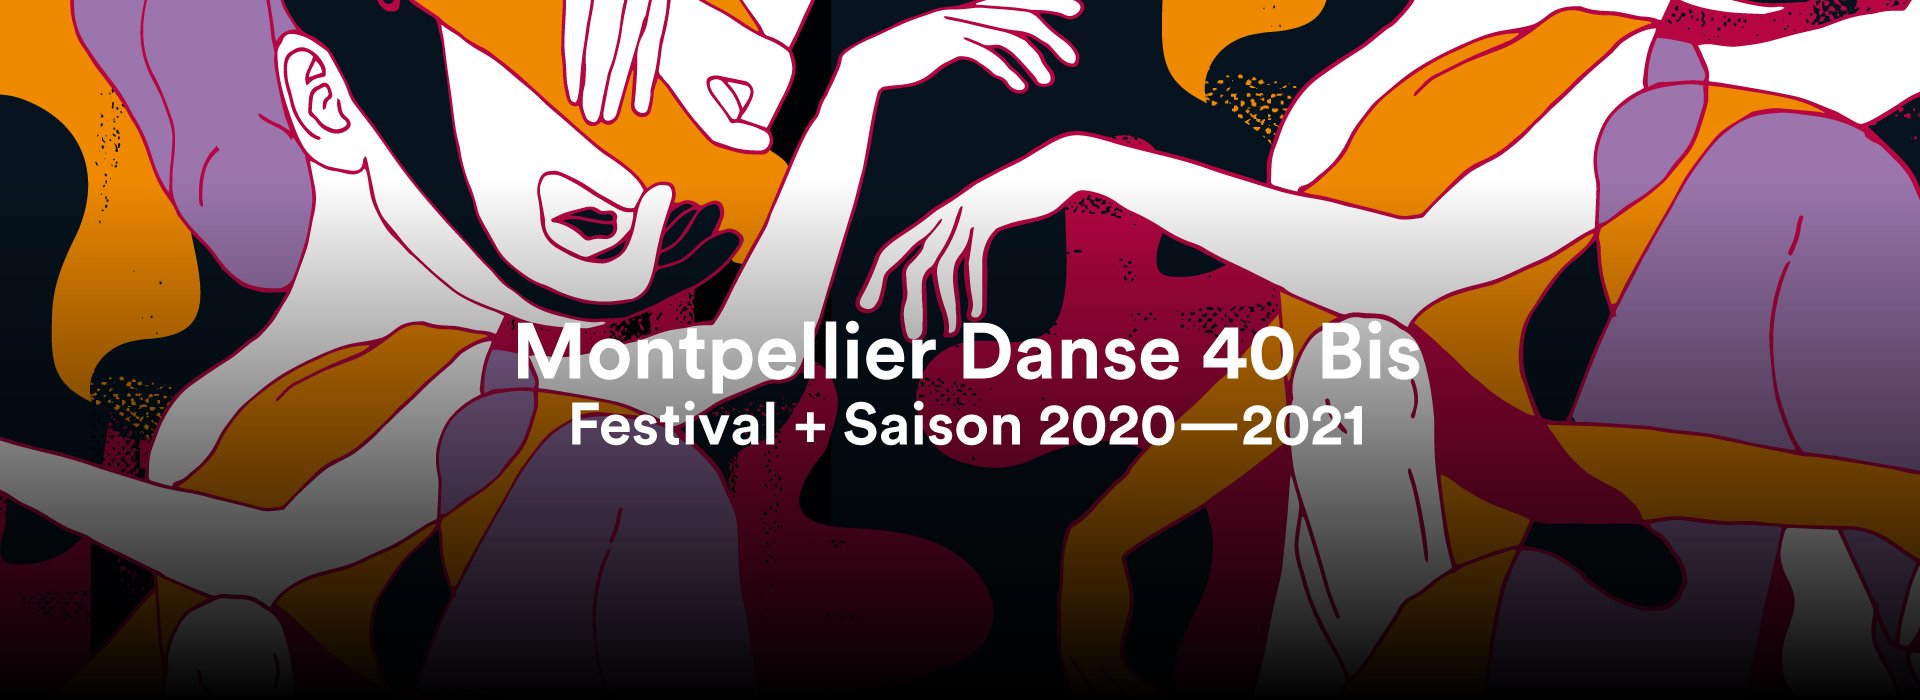 Affiche Montpellier Danse 40Bis